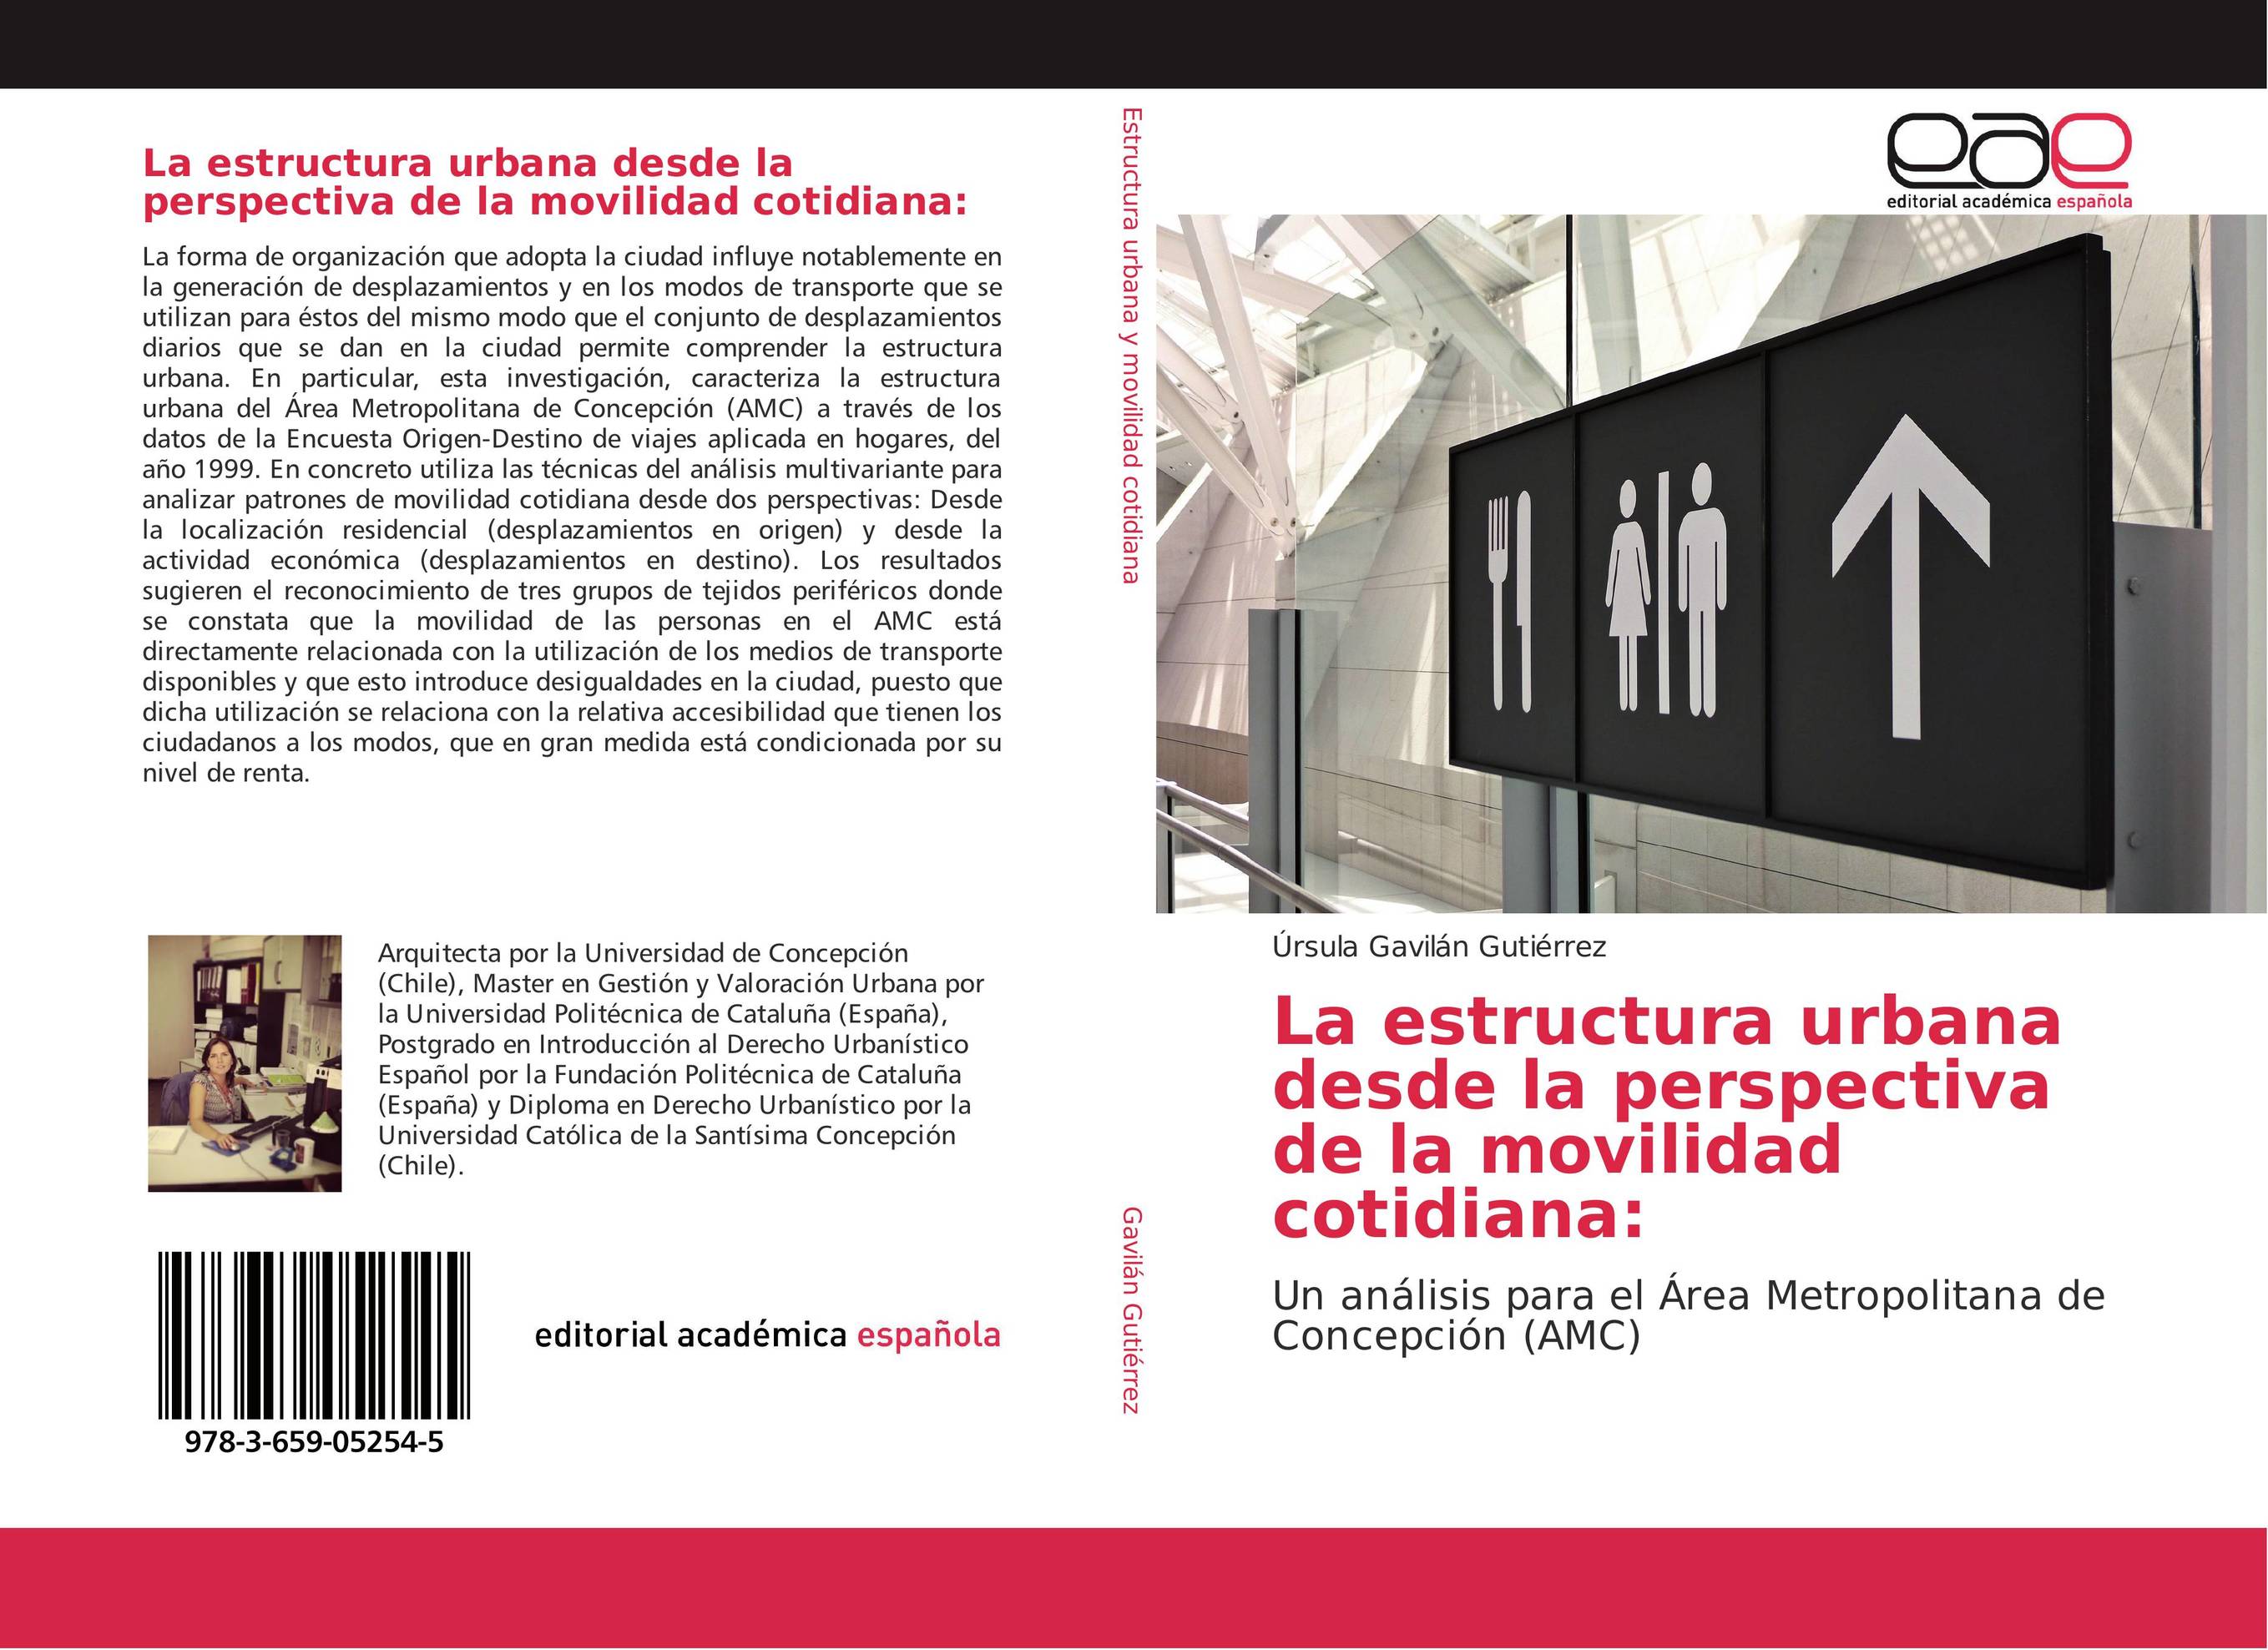 La estructura urbana desde la perspectiva de la movilidad cotidiana: